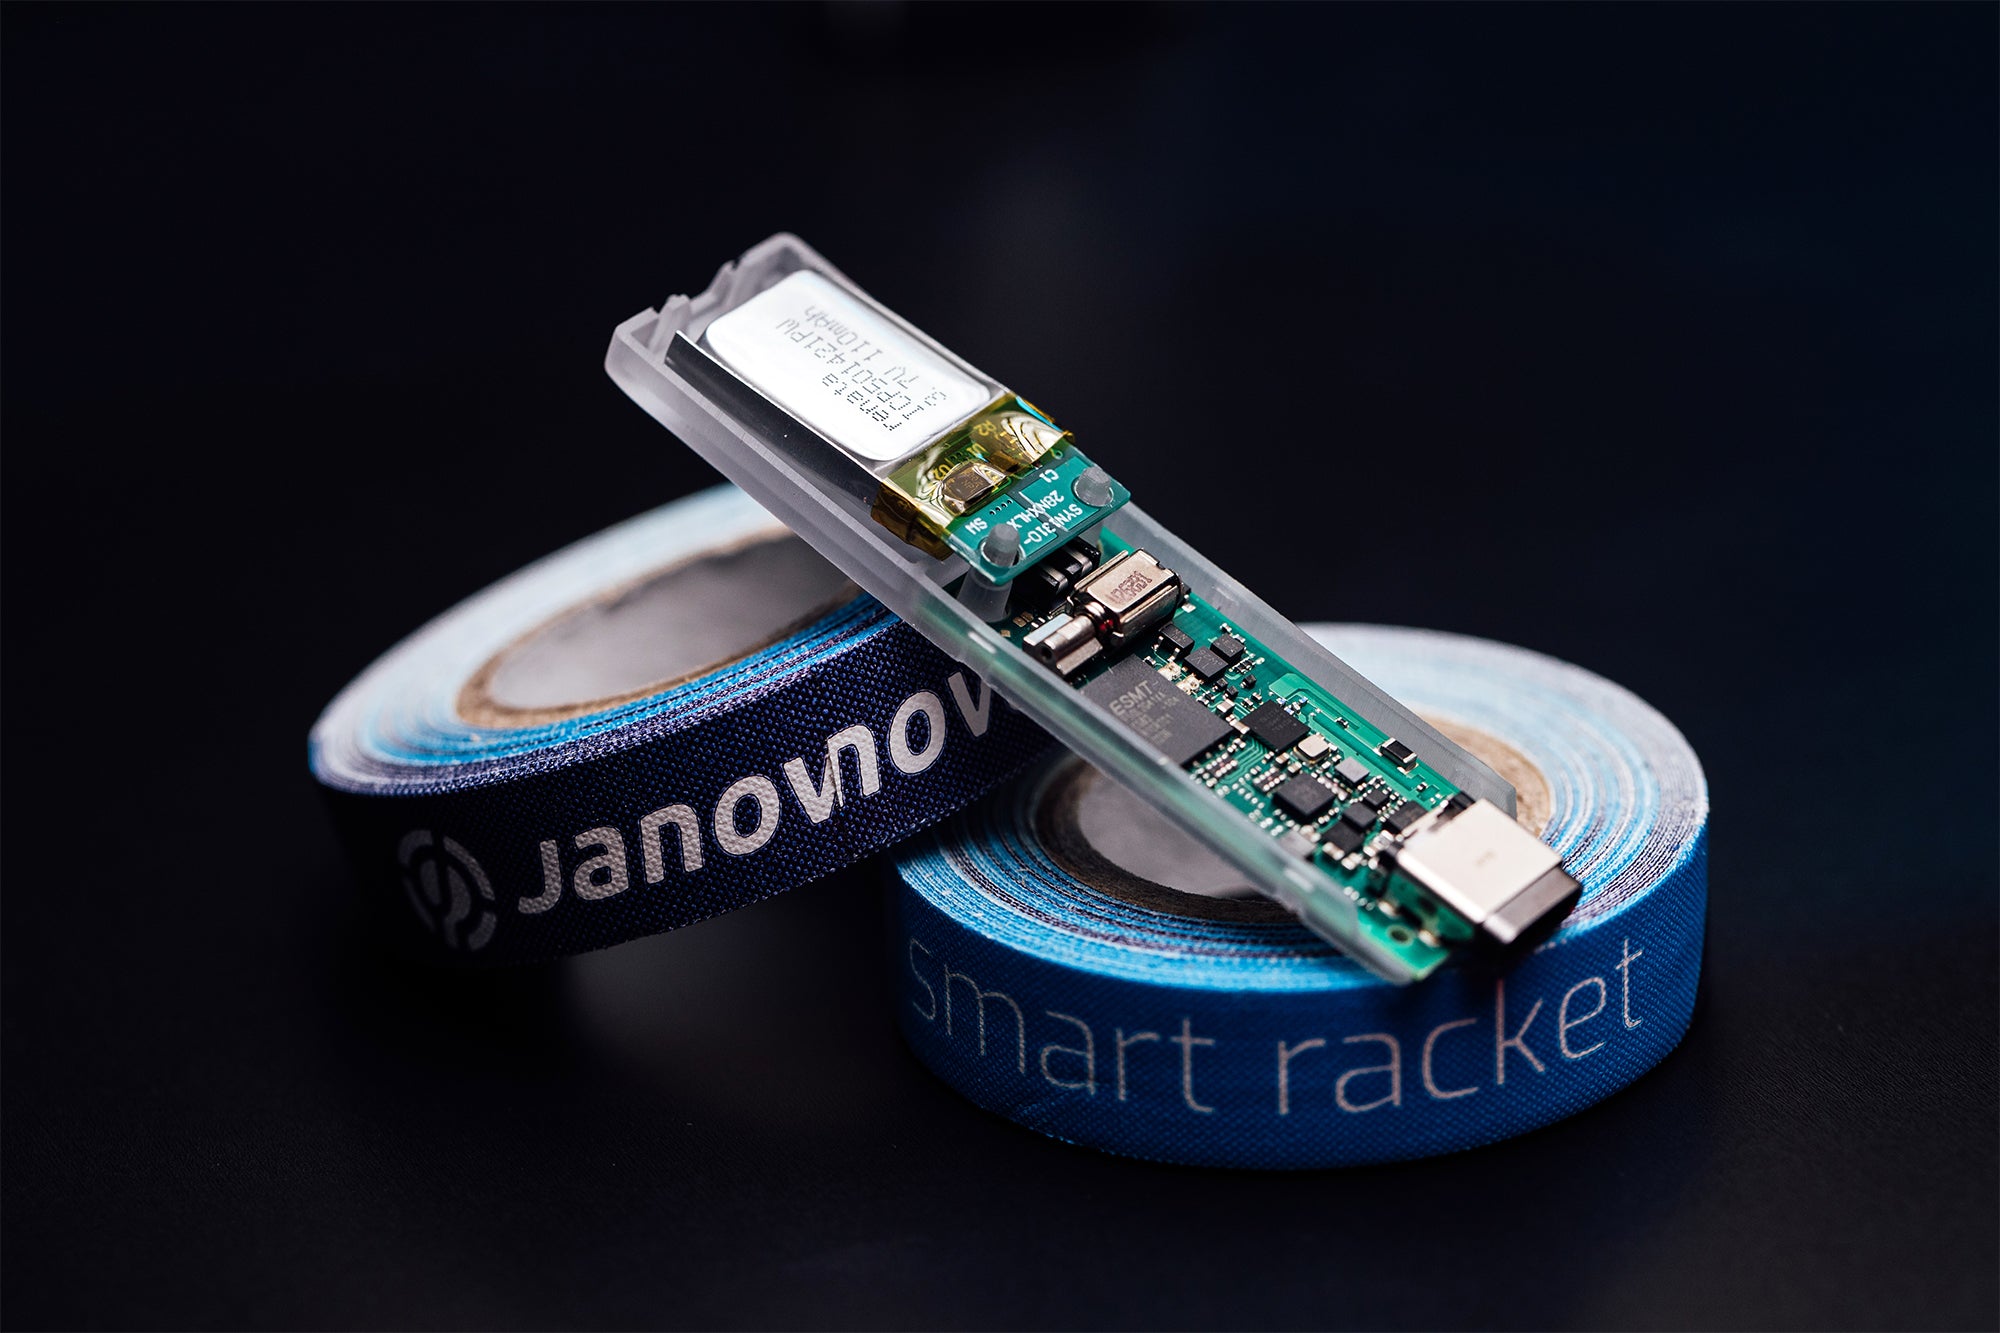 BURMS und Janova für die Entwicklung des Smart Rackets